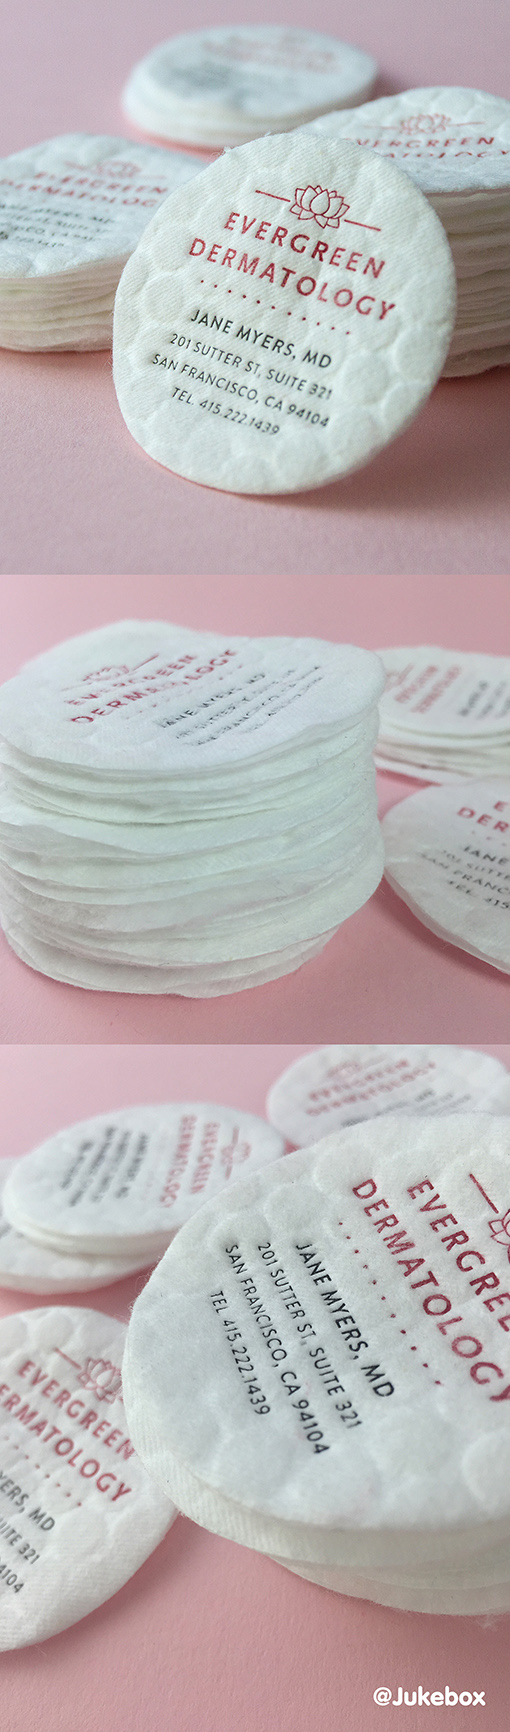 Unique Cotton Business Cards With Letterpress For A Dermatologist